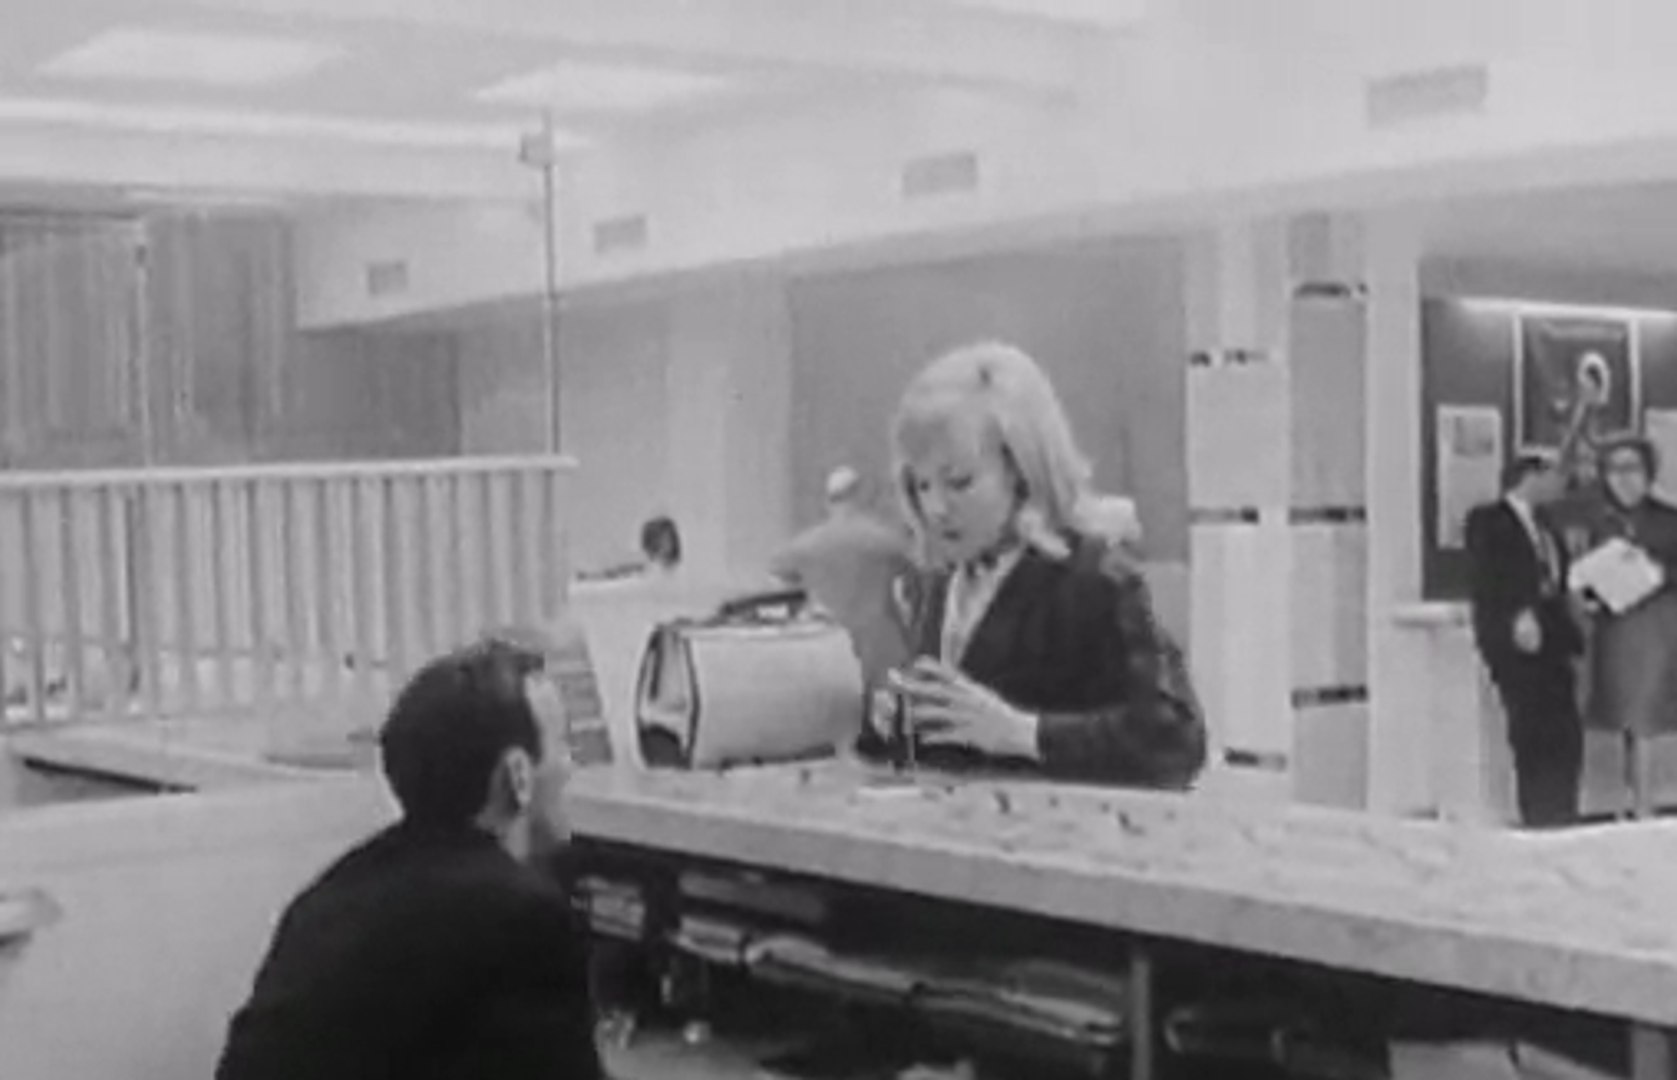 Il y a 50 ans, les femmes obtenaient le droit d'ouvrir un compte bancaire - Vidéo Dailymotion